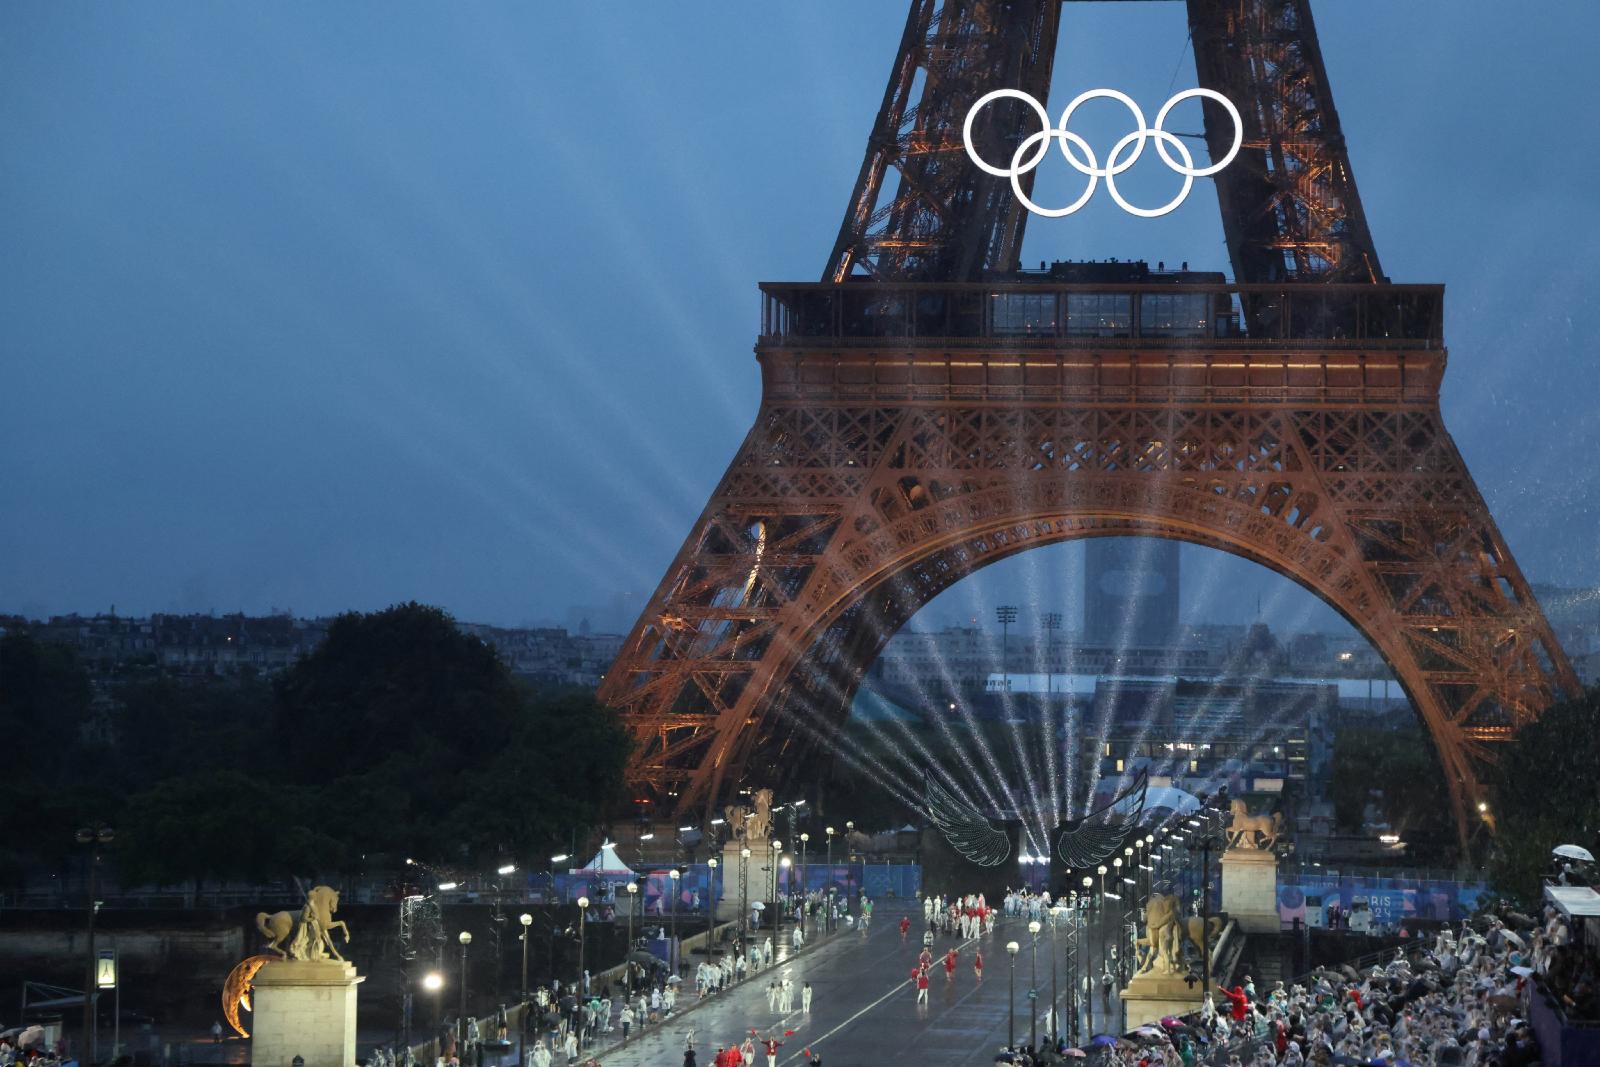 Los obispos franceses lamentan las burlas al cristianismo en la inauguración de los Juegos Olímpicos – Alfa y Omega